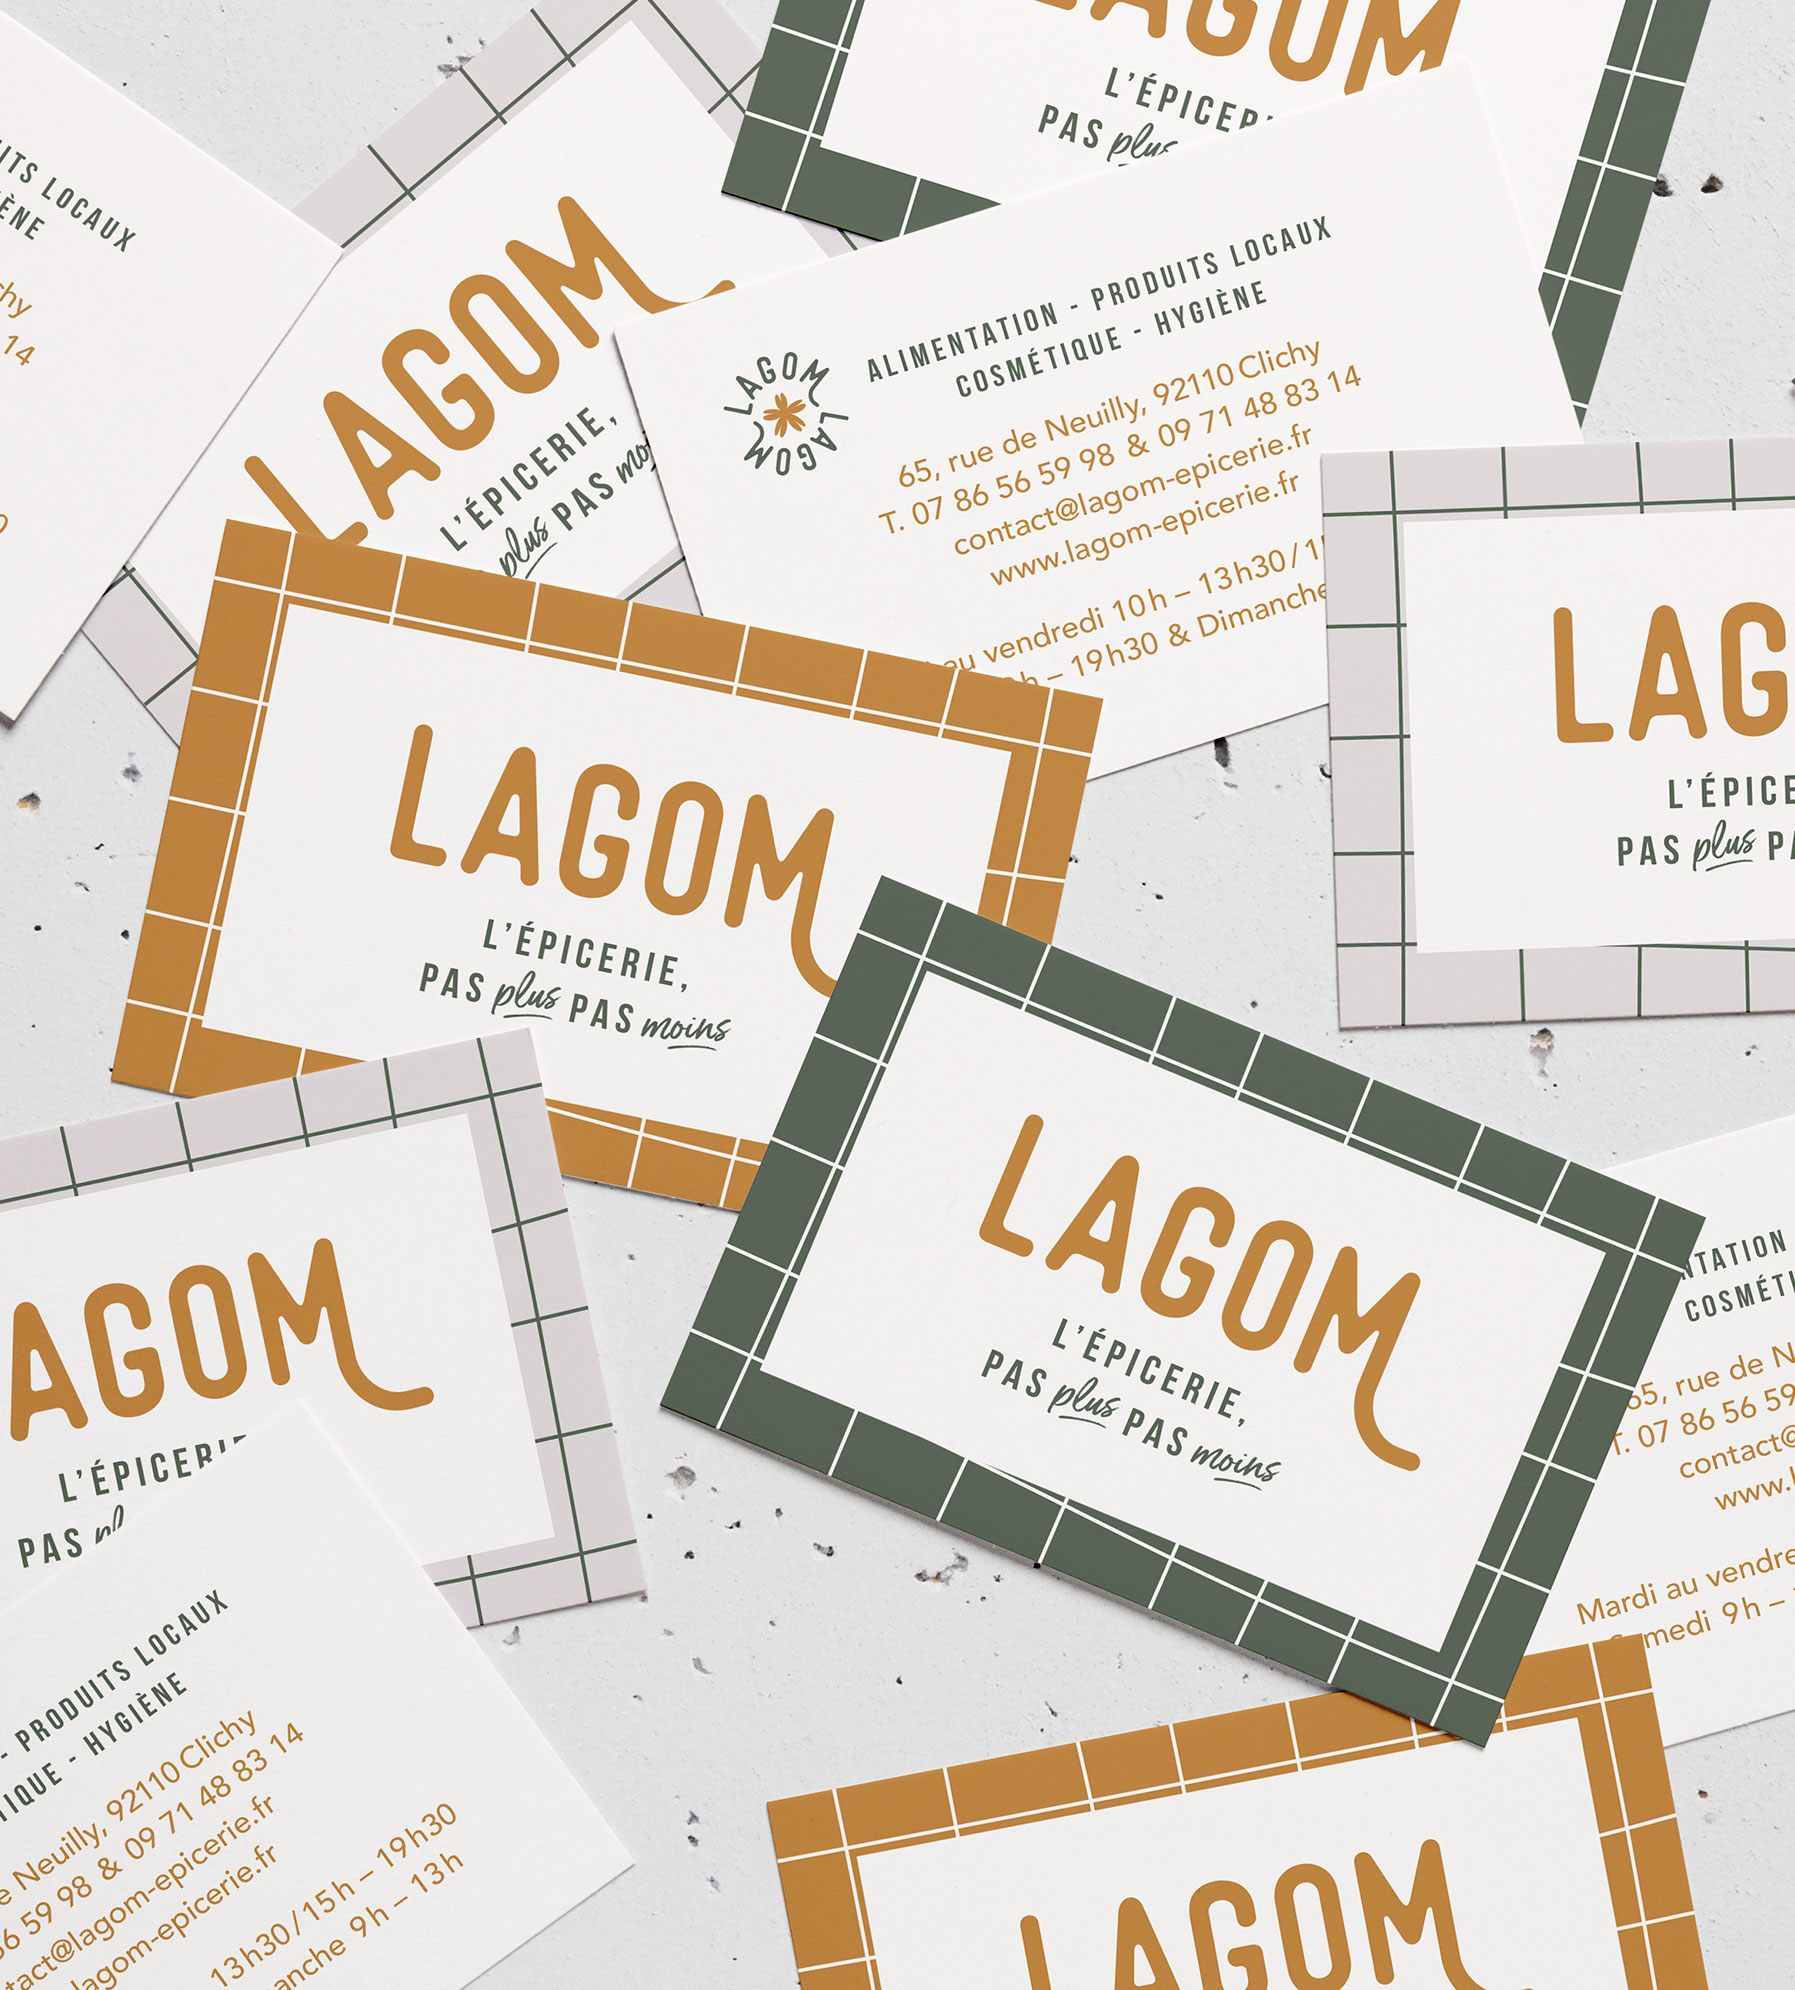 Création des cartes de visite de l'épicerie Lagom par le Studio graphique Laëtitia Costes